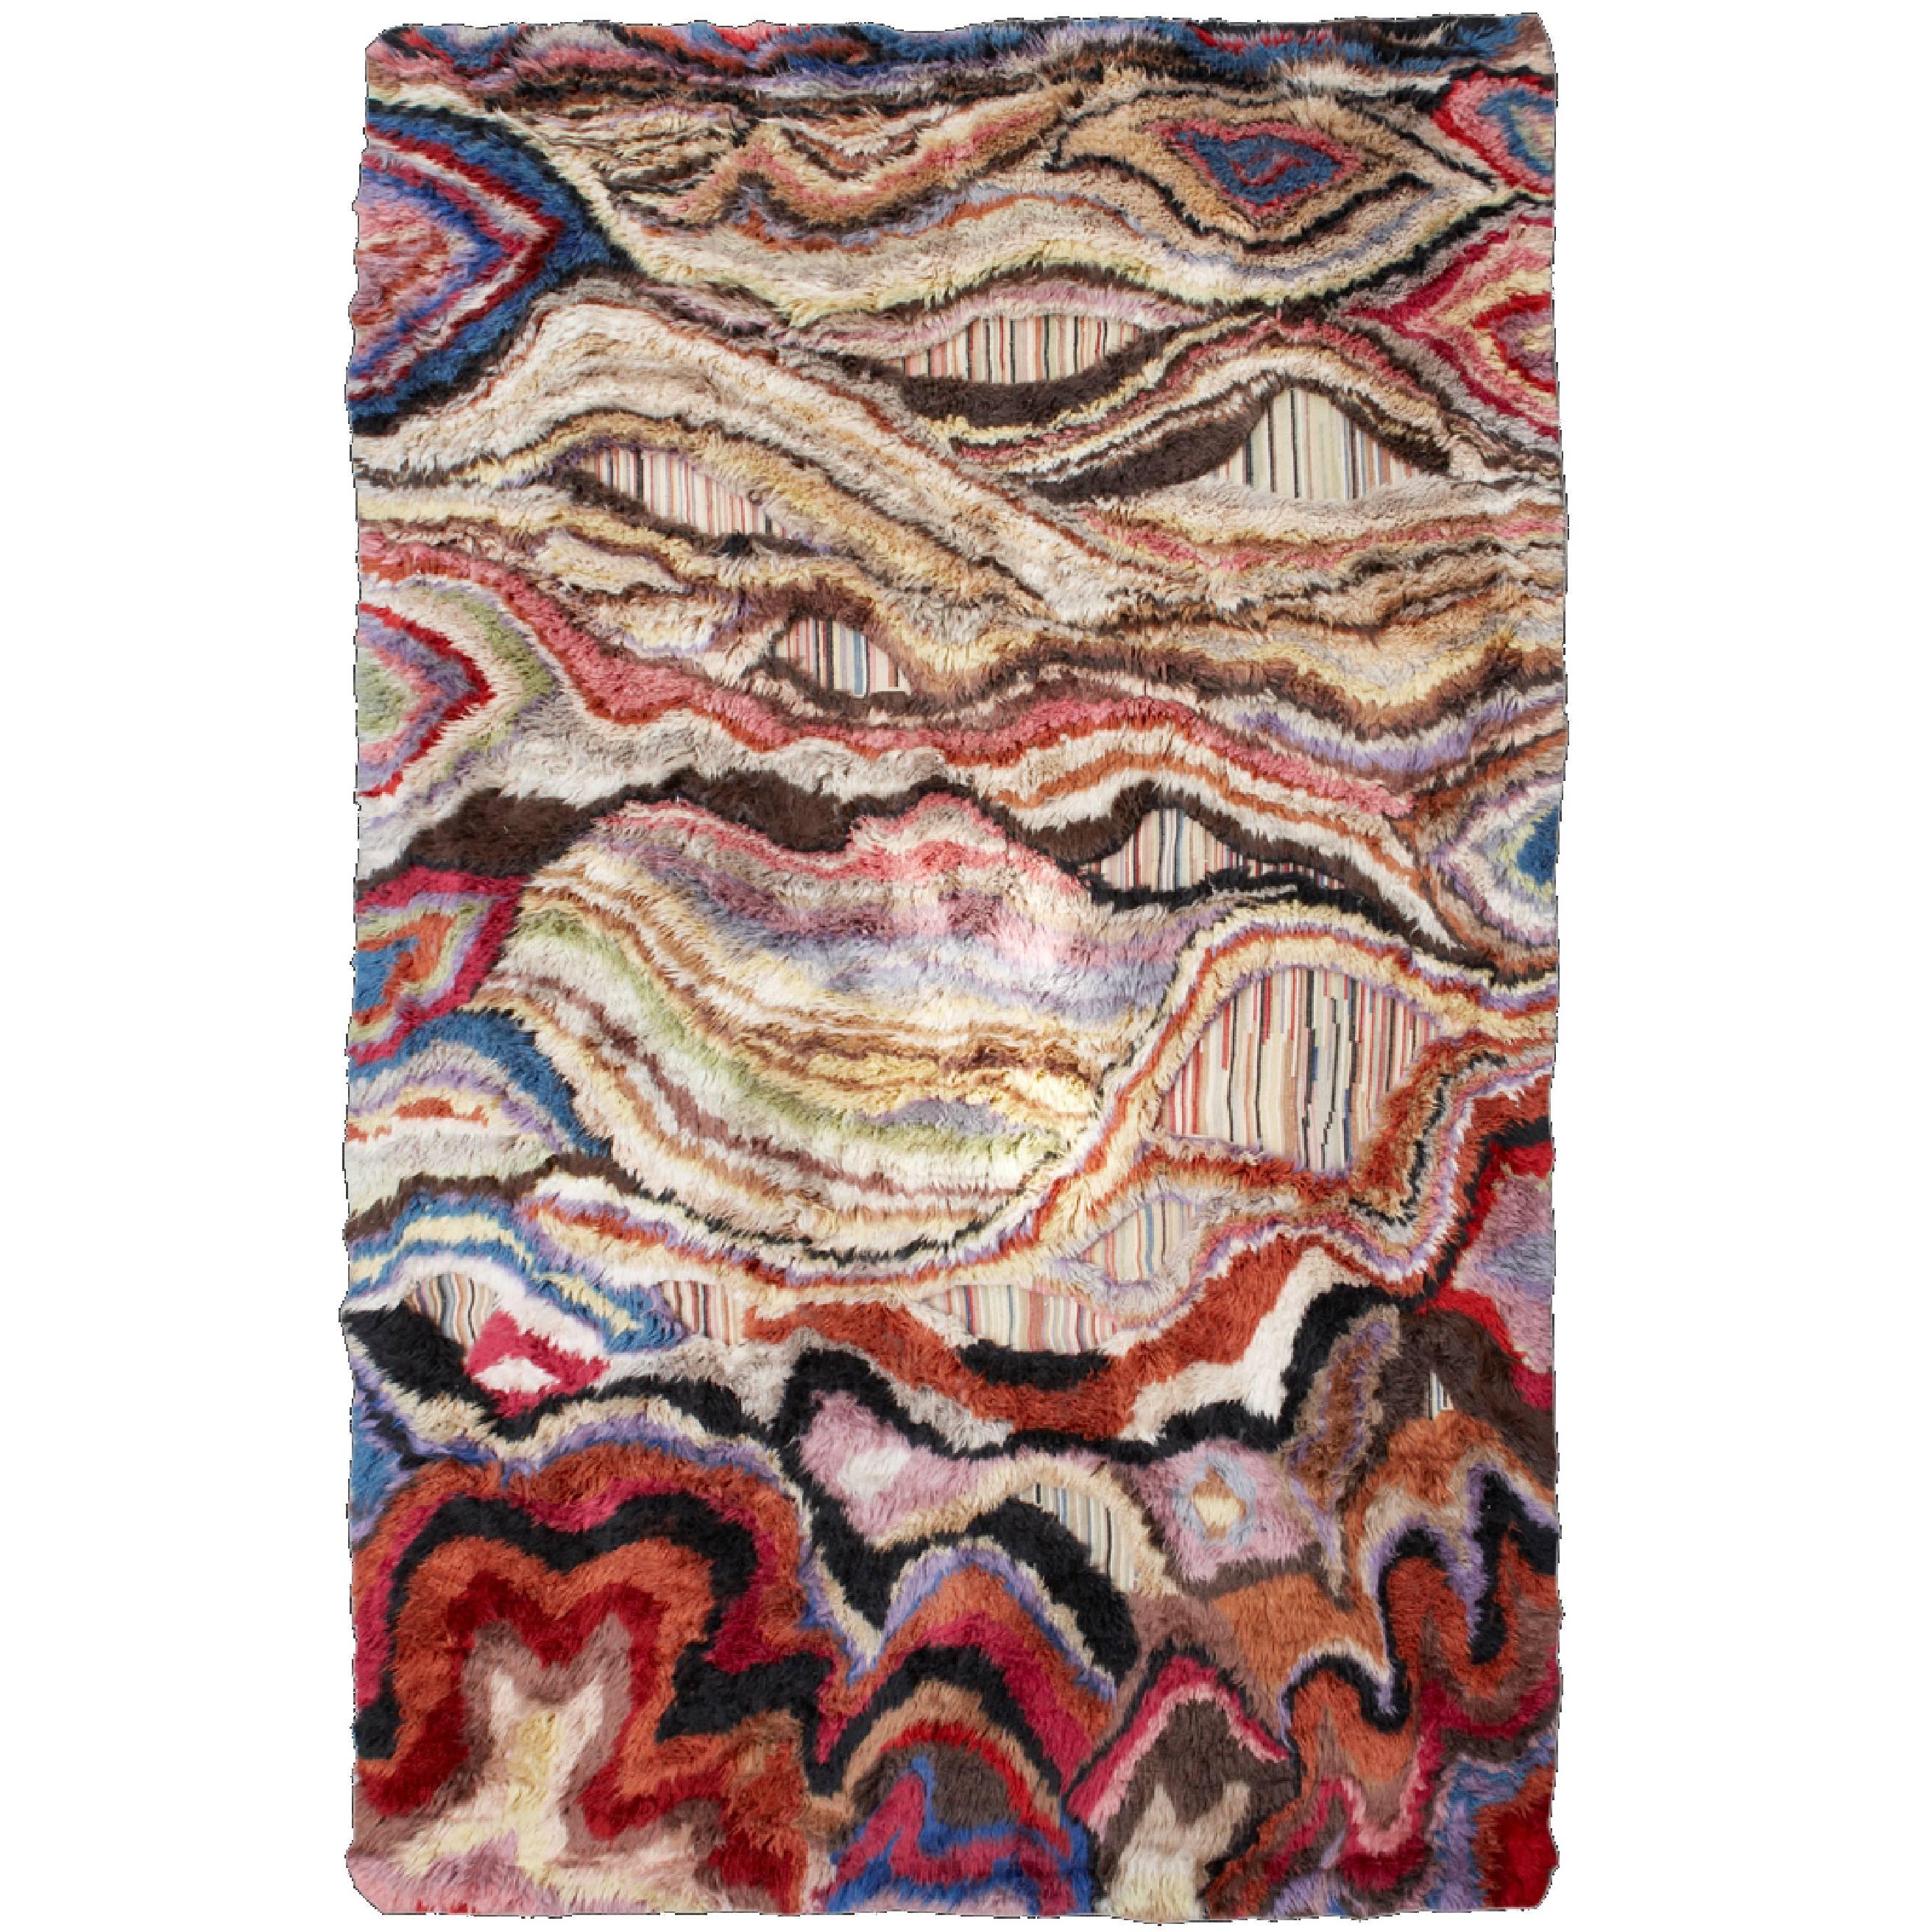 Colorful Handwoven Rug - "Amazonia" 